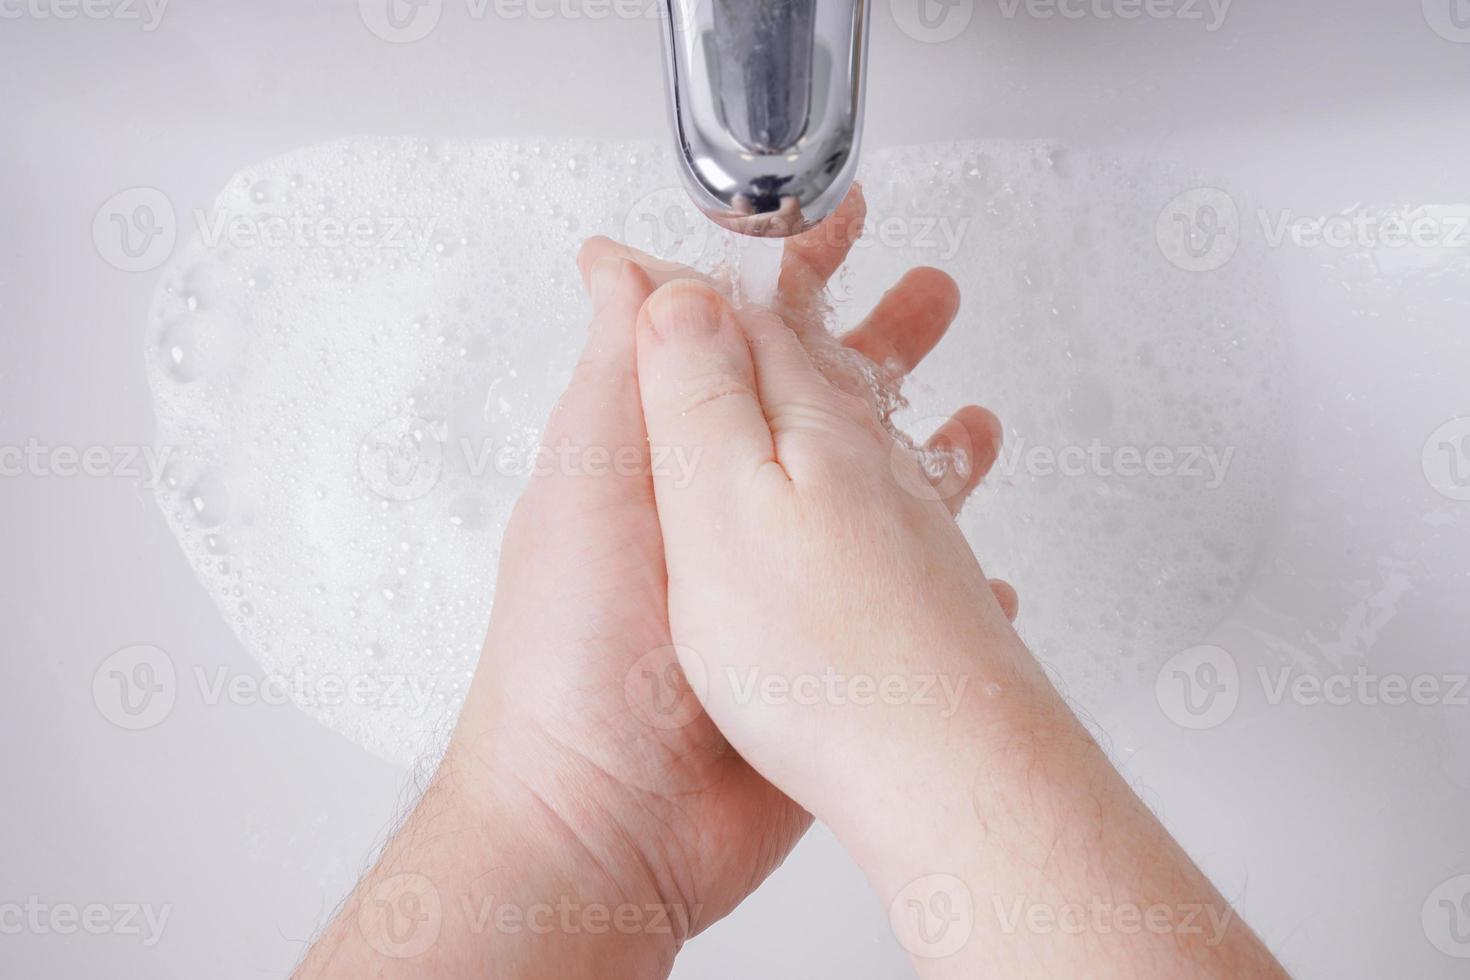 lavarsi le mani con acqua e sapone dal punto di vista personale foto